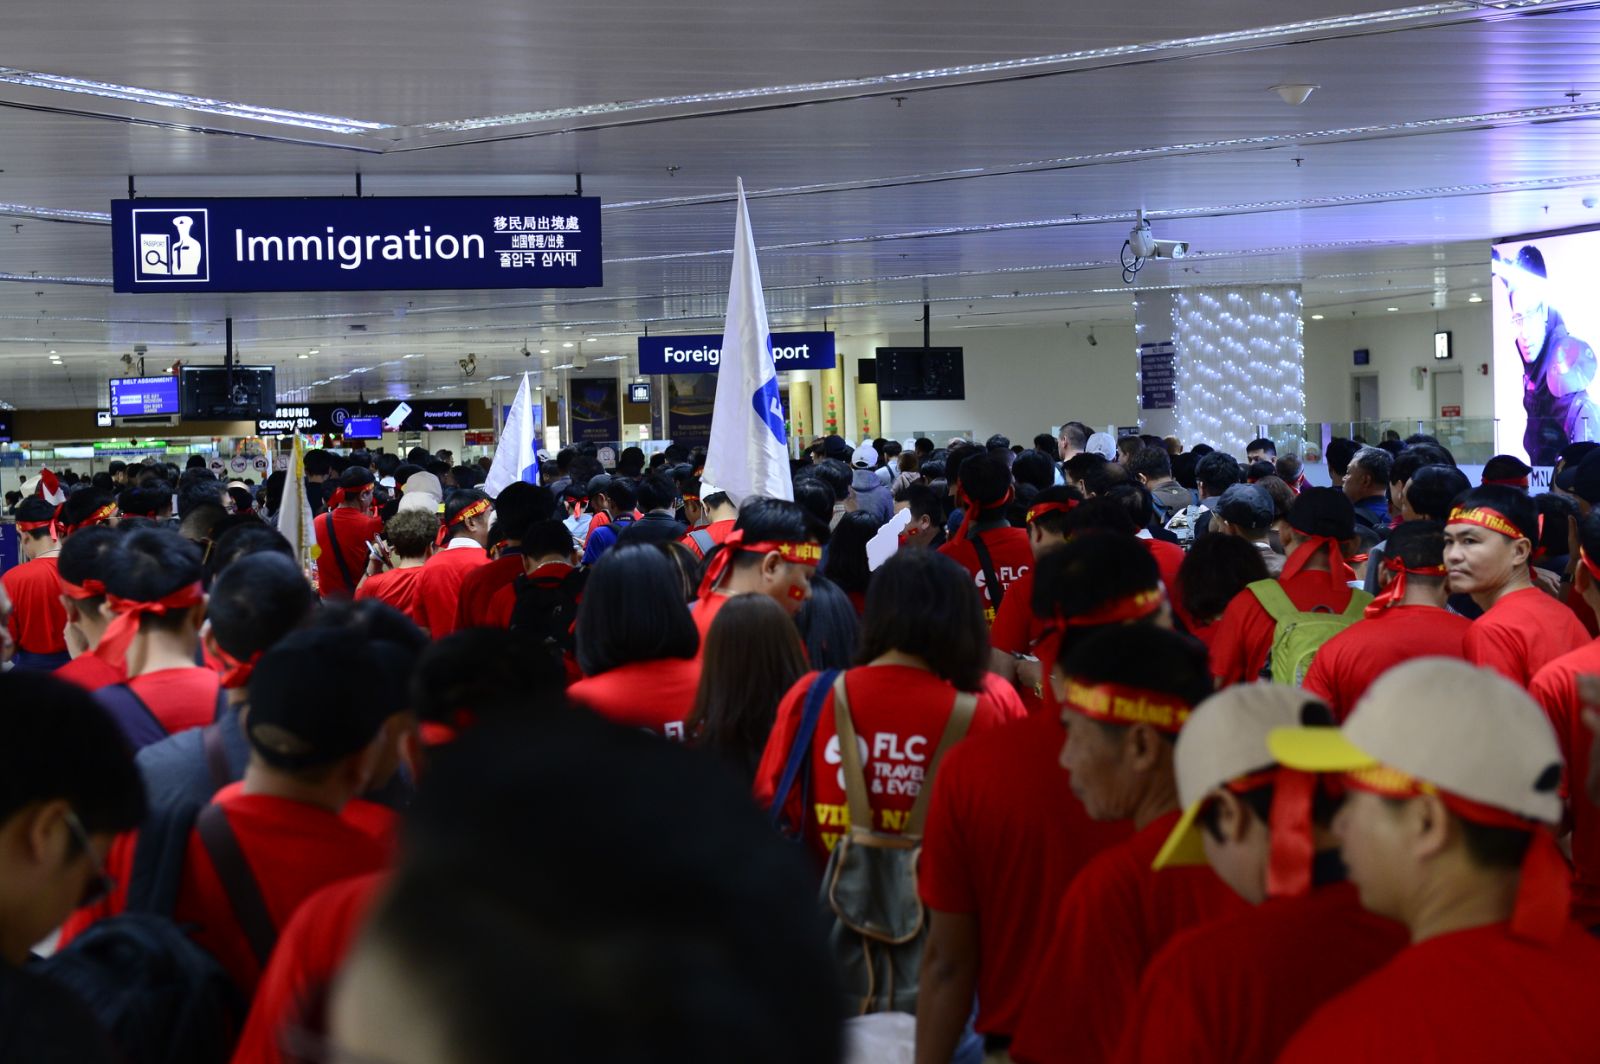 Cổ động viên Việt Nam vượt hàng ngàn km đến Manila - Philippines cổ vũ U22 Việt Nam